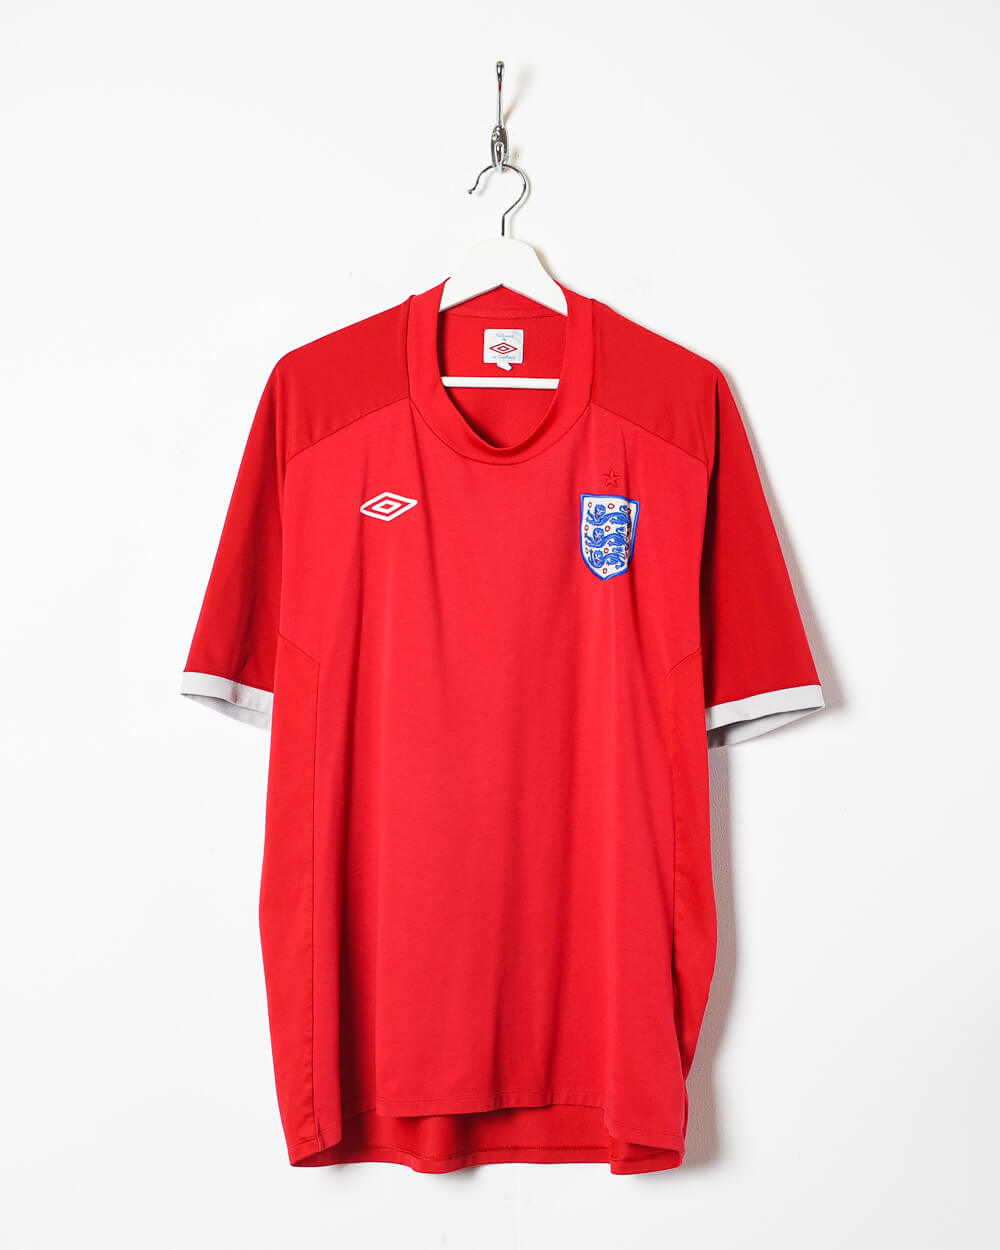 Red Umbro 2010/11 England Away Shirt - Large